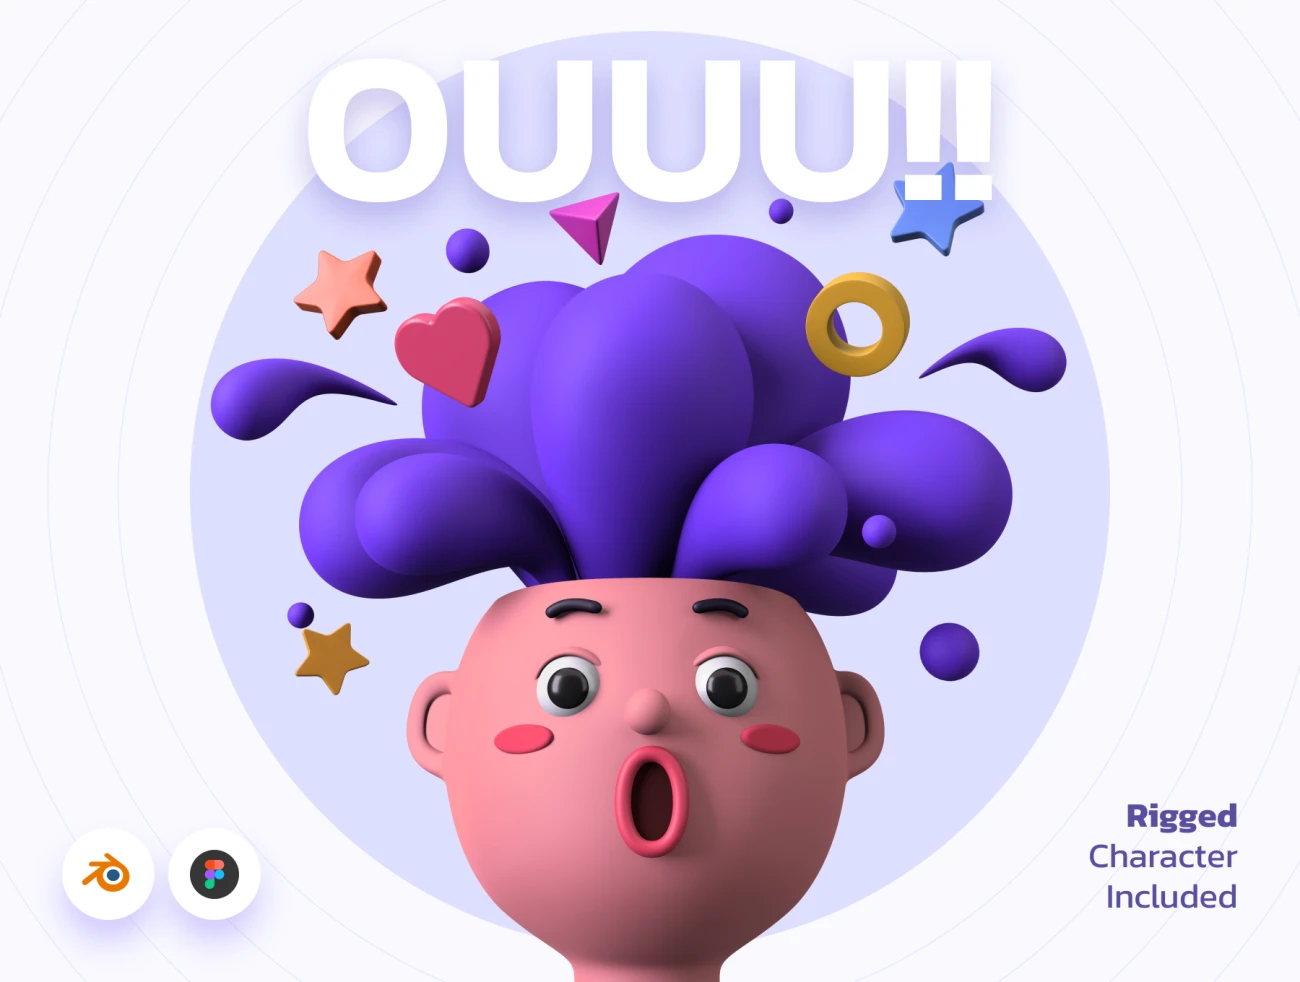 OUUU!!! 3D Illustration blender 20个场景拥有趣味标志性特征的3D插图包-3D/图标、人物插画、动画展示、场景插画、学习生活、插画、插画功能、插画风格、概念创意、趣味漫画-到位啦UI